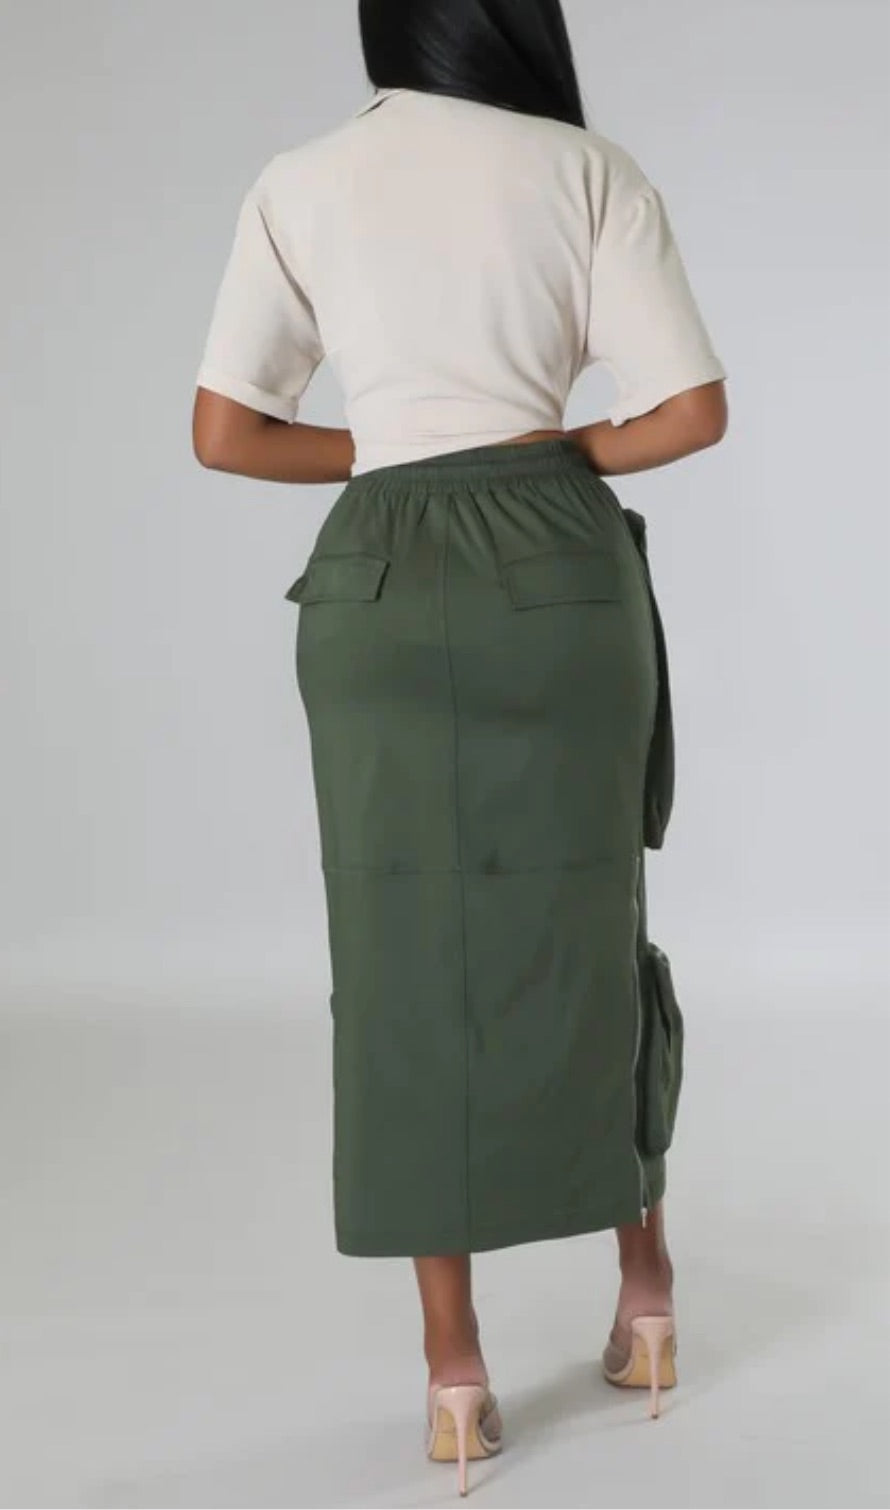 Olive Green Classy Girl Cargo Skirt